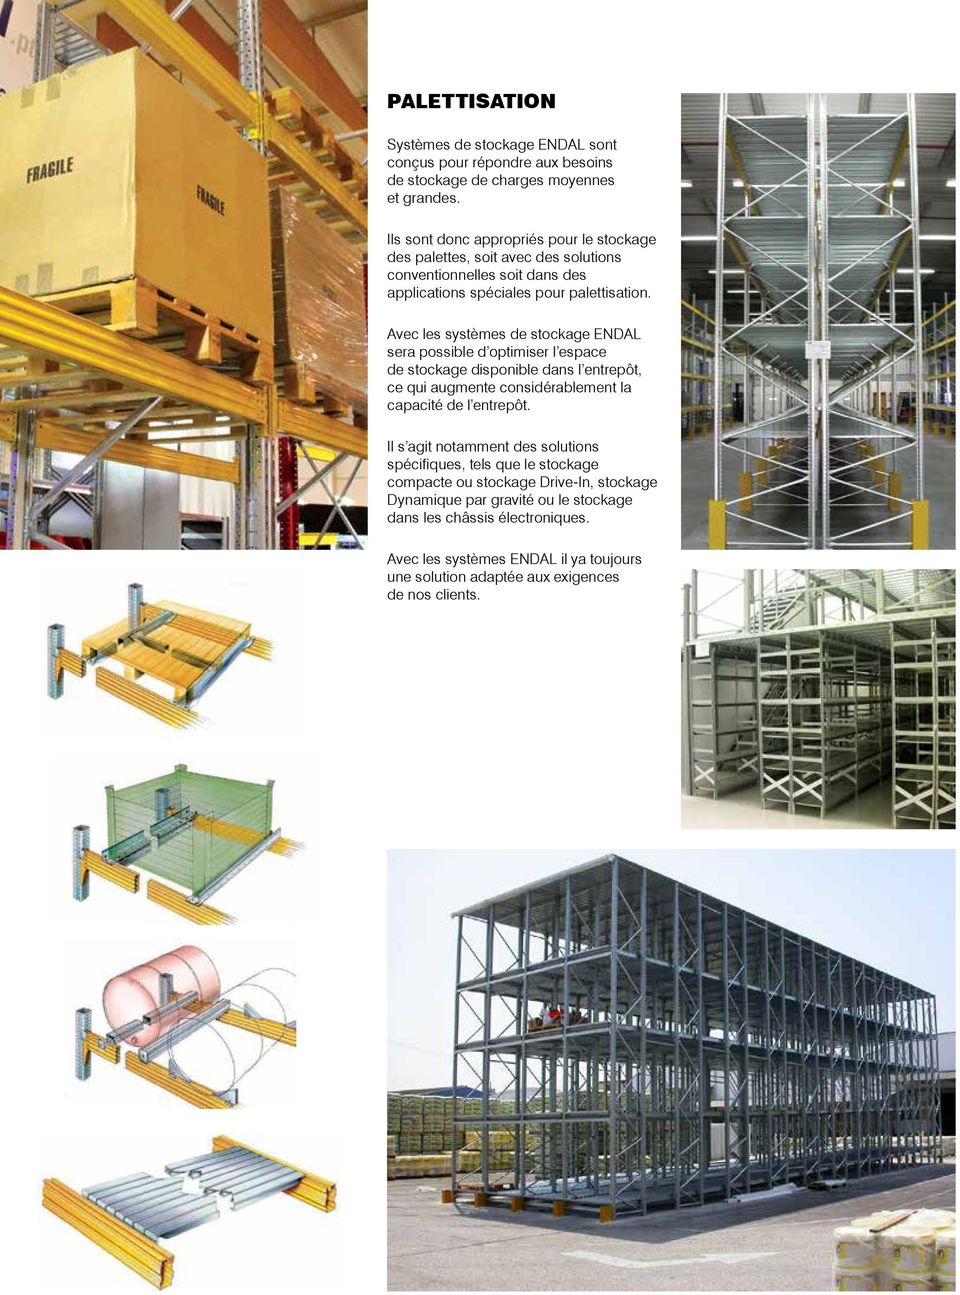 Avec les systèmes de stockage ENDAL sera possible d optimiser l espace de stockage disponible dans l entrepôt, ce qui augmente considérablement la capacité de l entrepôt.